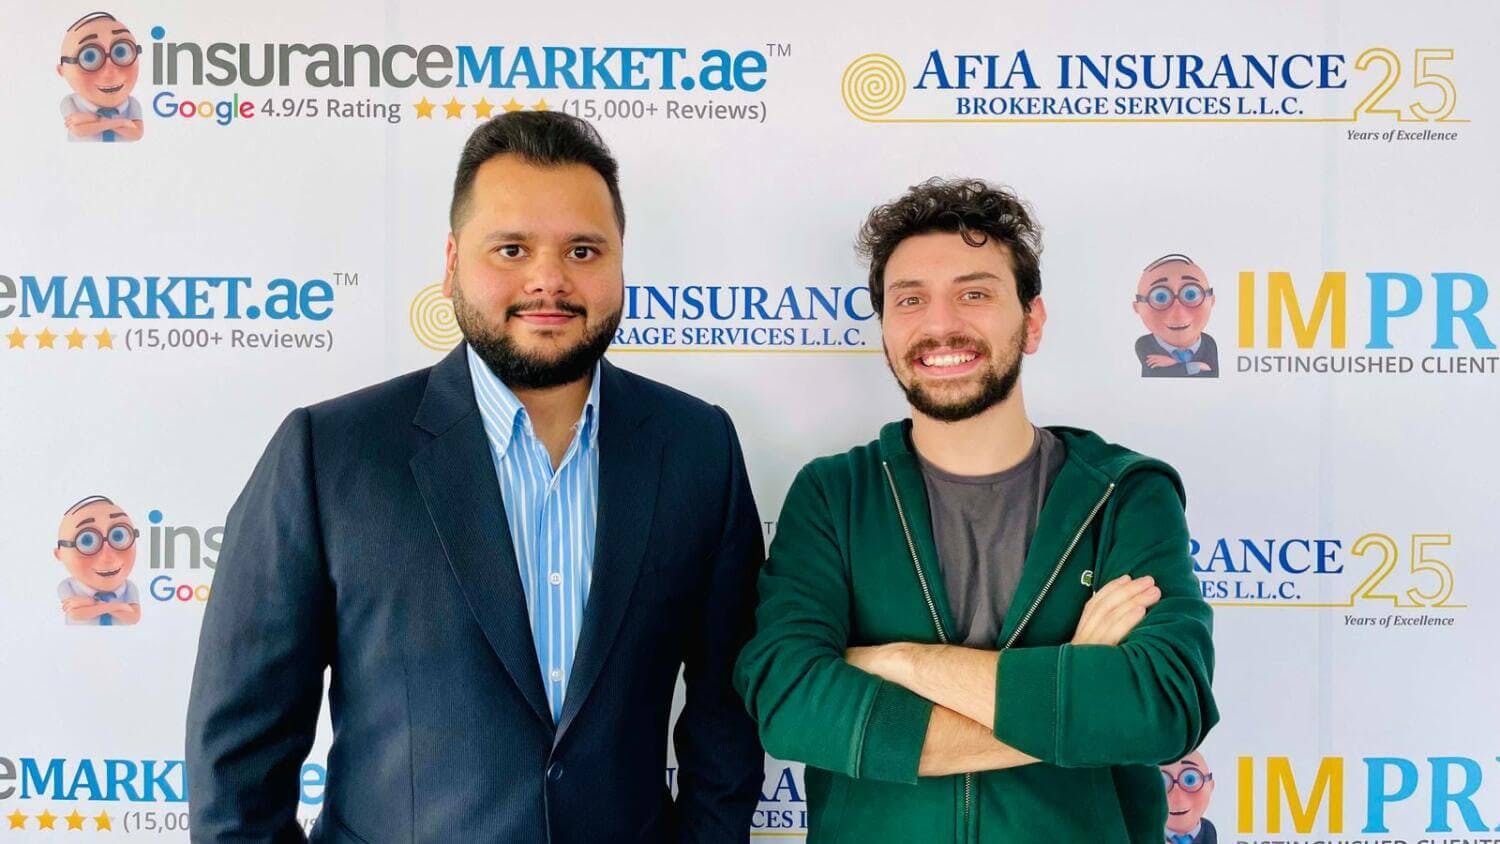 InsuranceMarket.ae signs Ahmad Haffar, the 'Voice of Dubai'